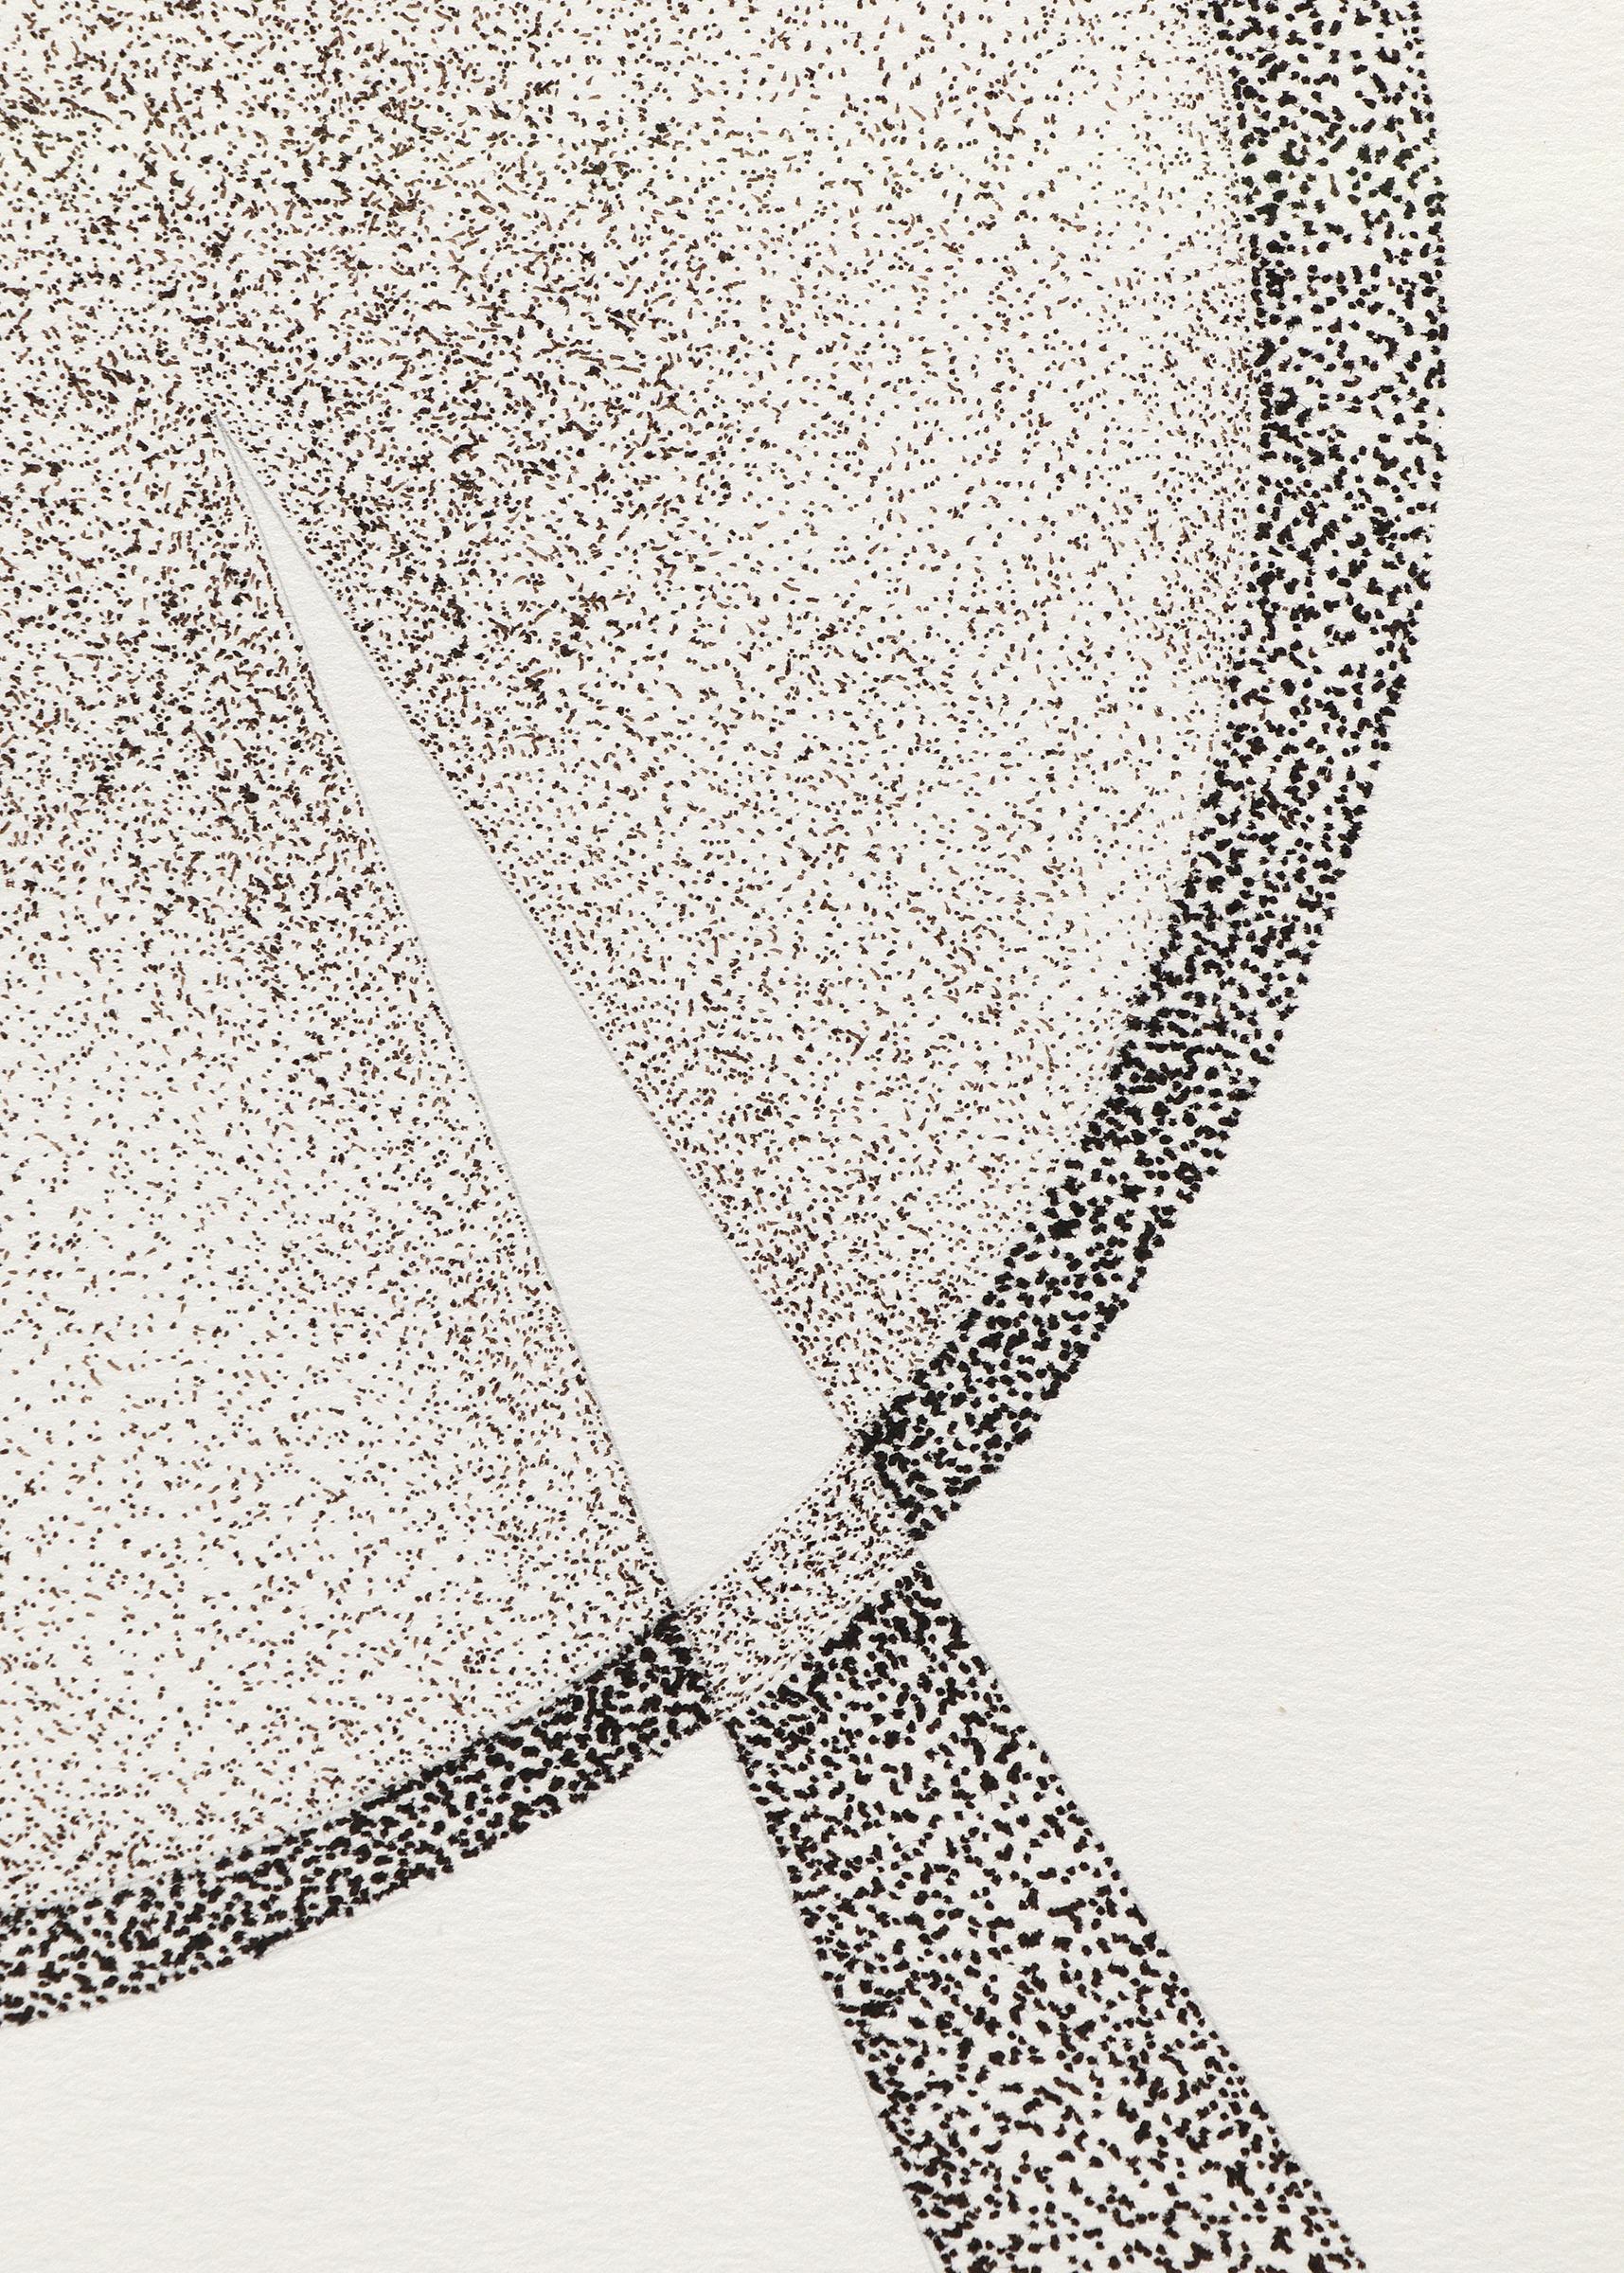 Abstrakte Bleistift- und Bleistiftzeichnung, spitz zulaufende geometrische Formen, Taos Künstler (Grau), Figurative Art, von James Meek